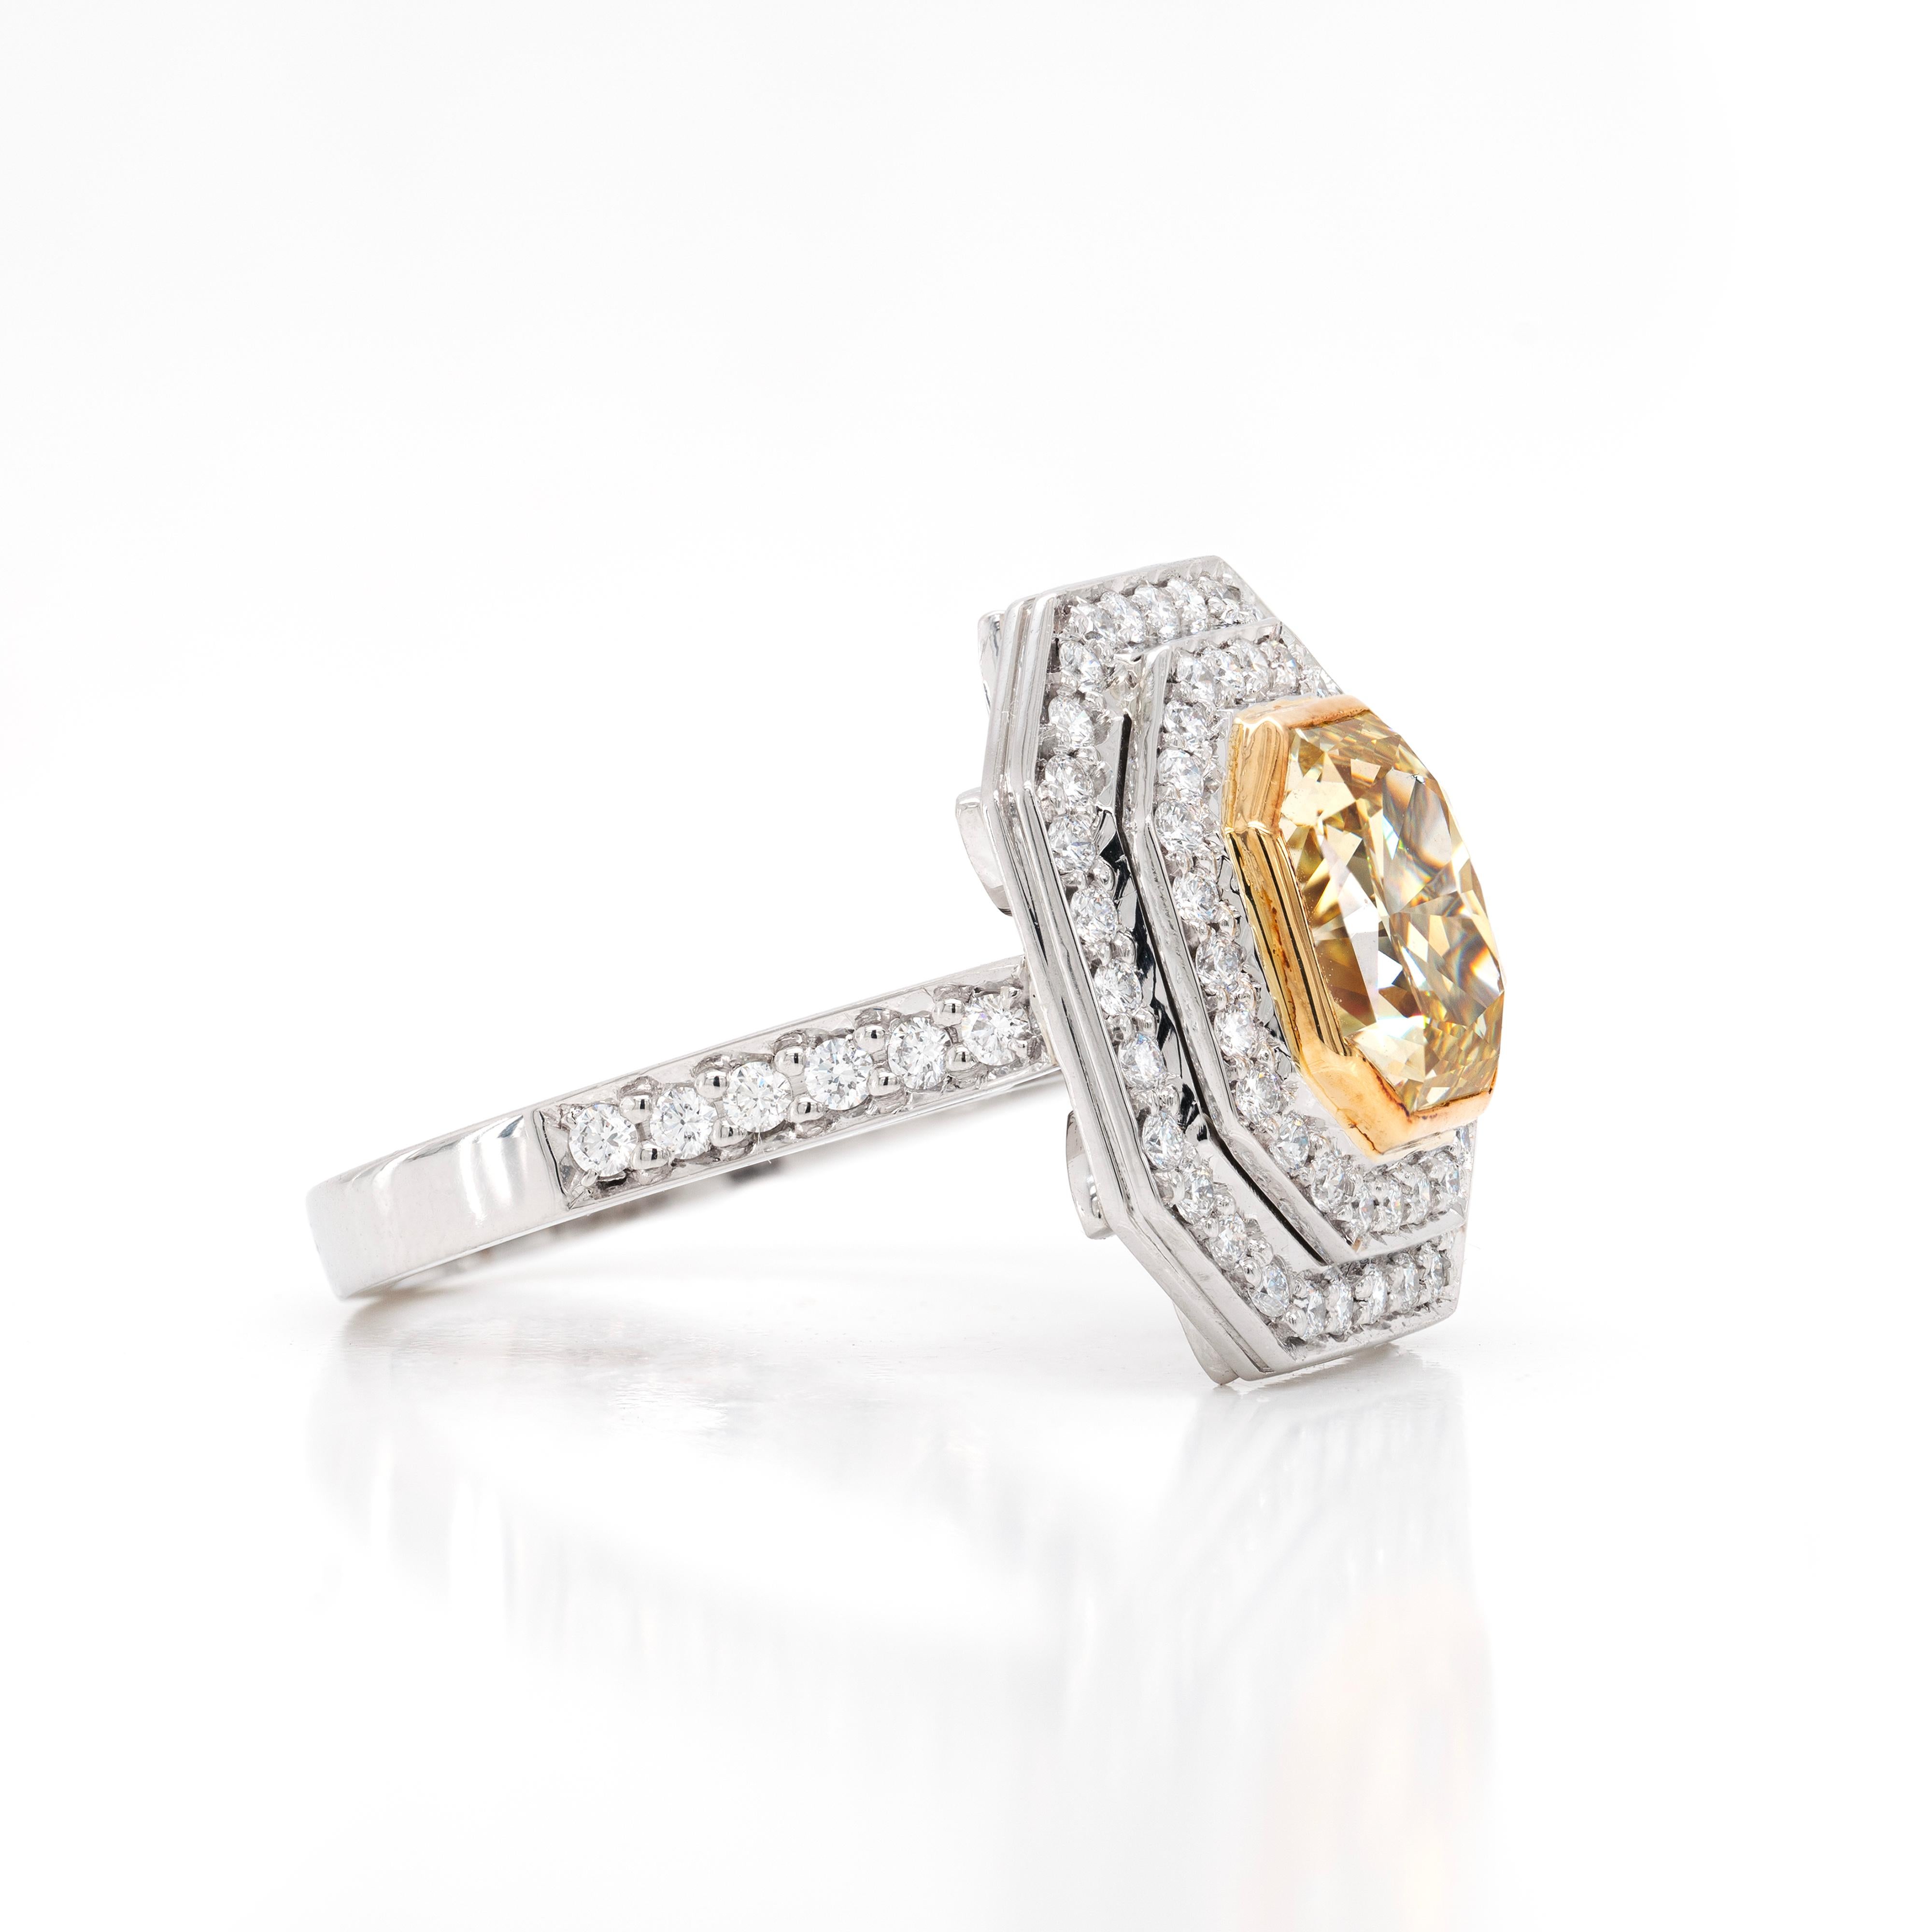 Dieser prächtige Verlobungsring aus 18 Karat Weißgold enthält einen beeindruckenden GIA-zertifizierten Fancy Intensive Yellow-Diamanten mit einem Gewicht von  3,31 ct, montiert in einer offenen Fassung aus 18 Karat Roségold mit Reibung. Der